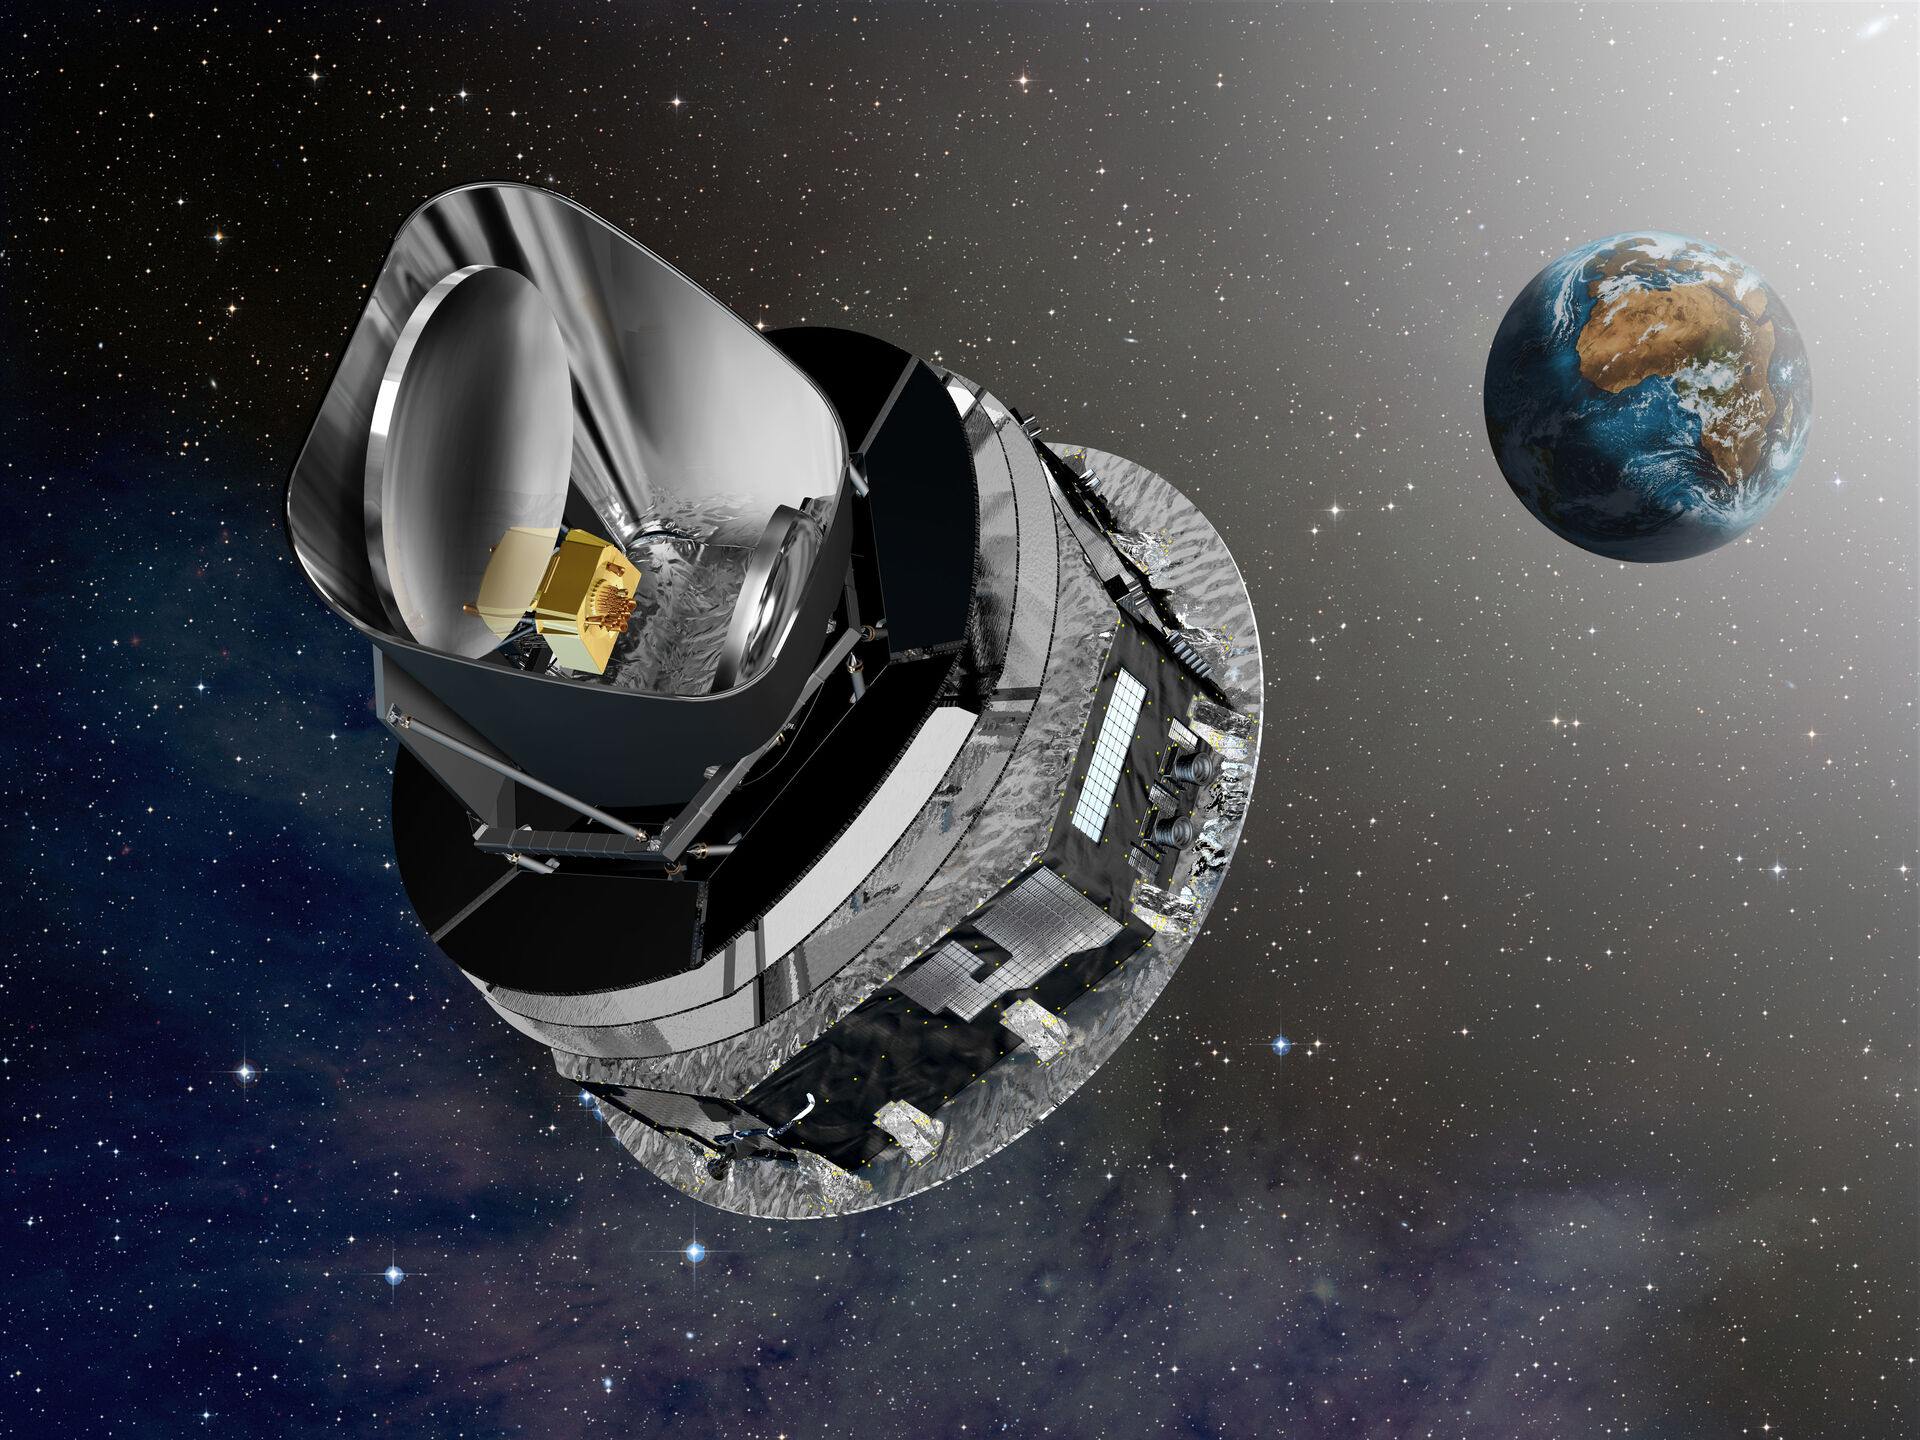 Planck-satellitten i rommet